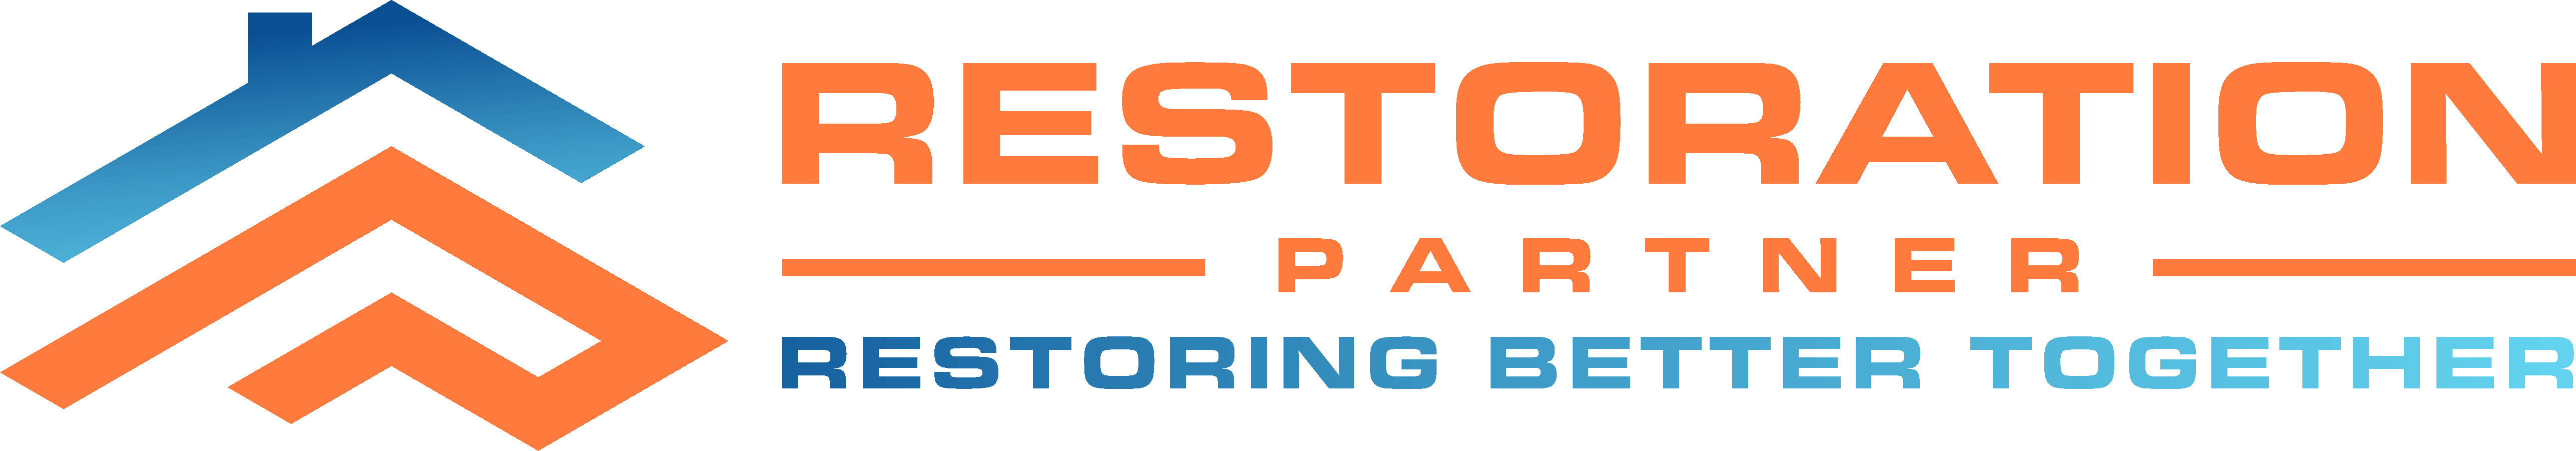 Restoration Partner Banner